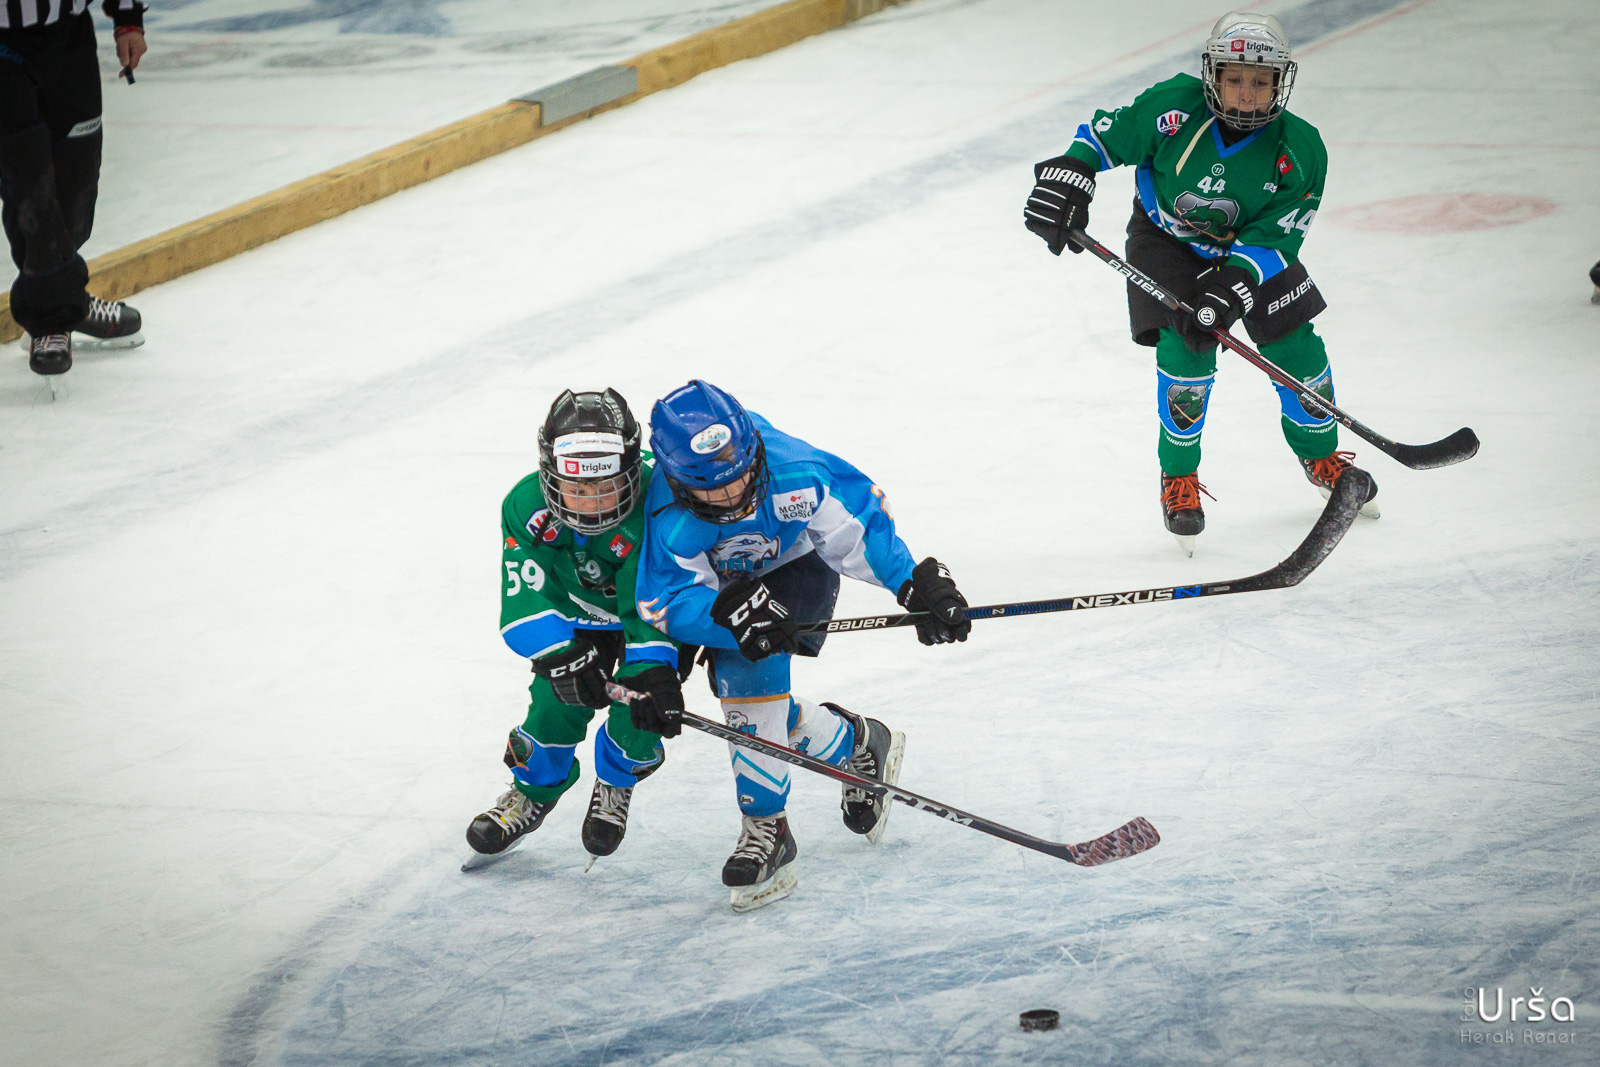 Turnir hokejskih šol na Jesenicah, 18.11.2018